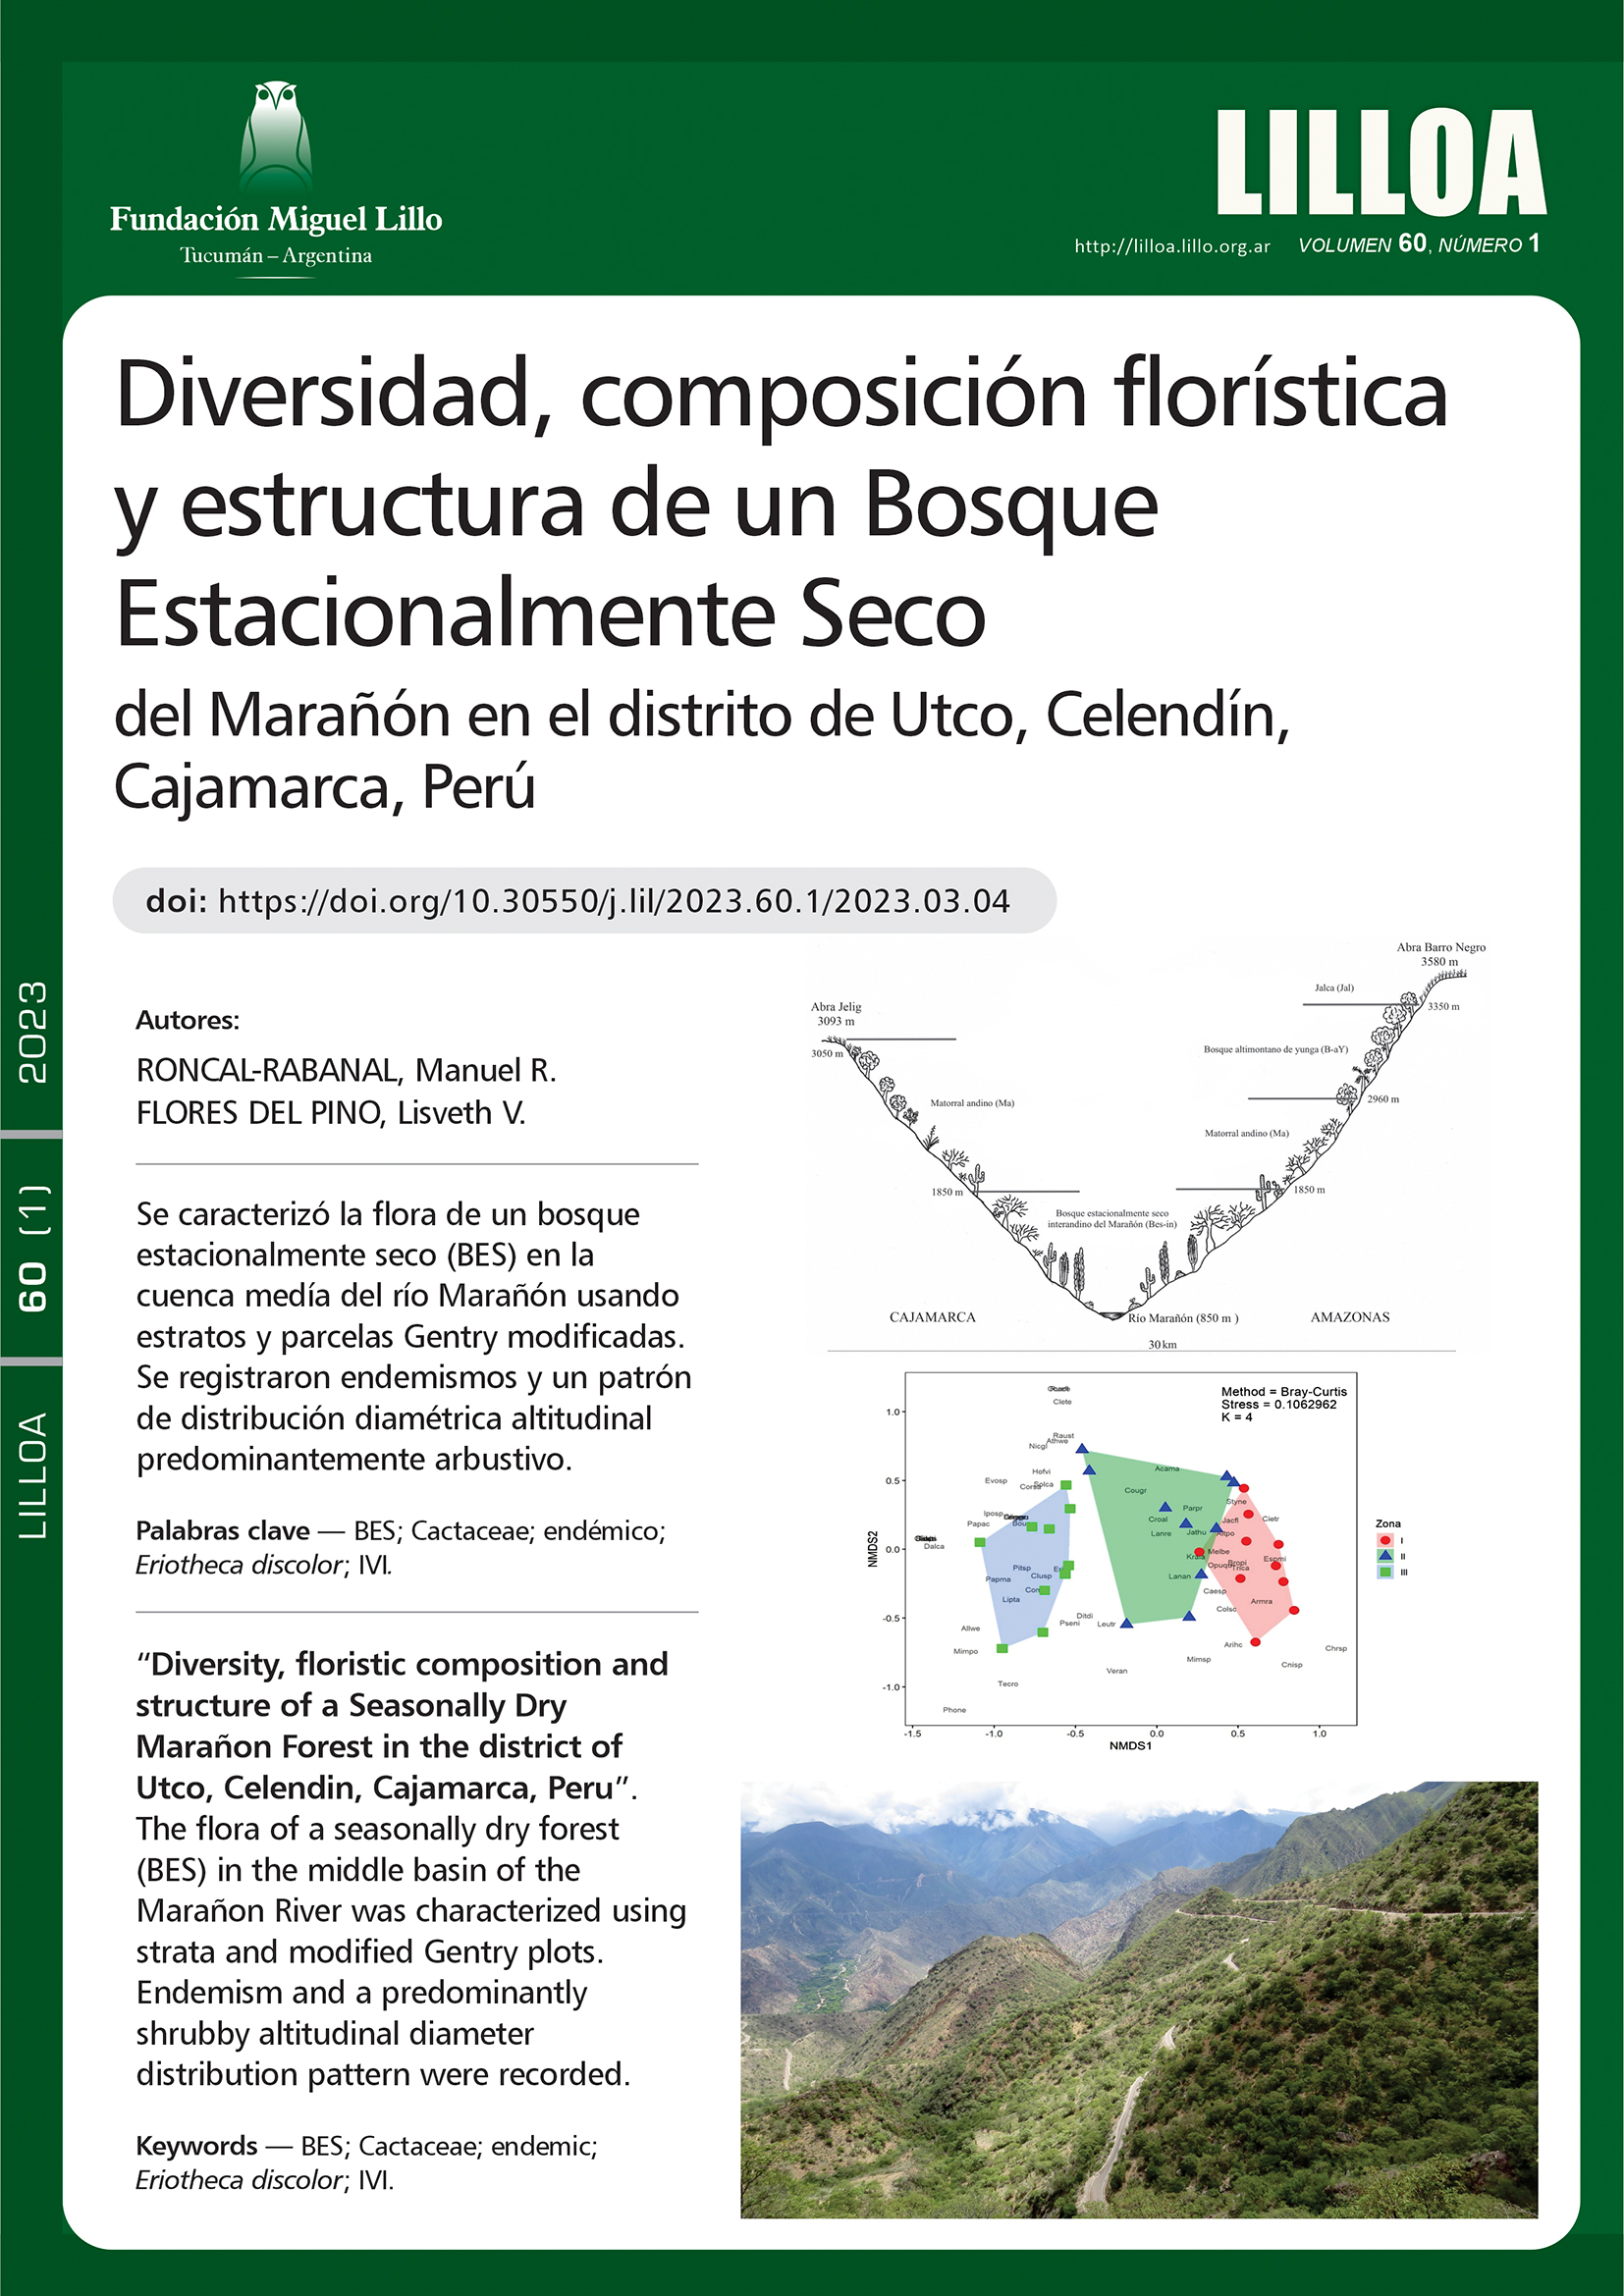 Diversidad, composición florística y estructura de un Bosque Estacionalmente Seco del Marañón en el distrito de Utco, Celendín, Cajamarca, Perú